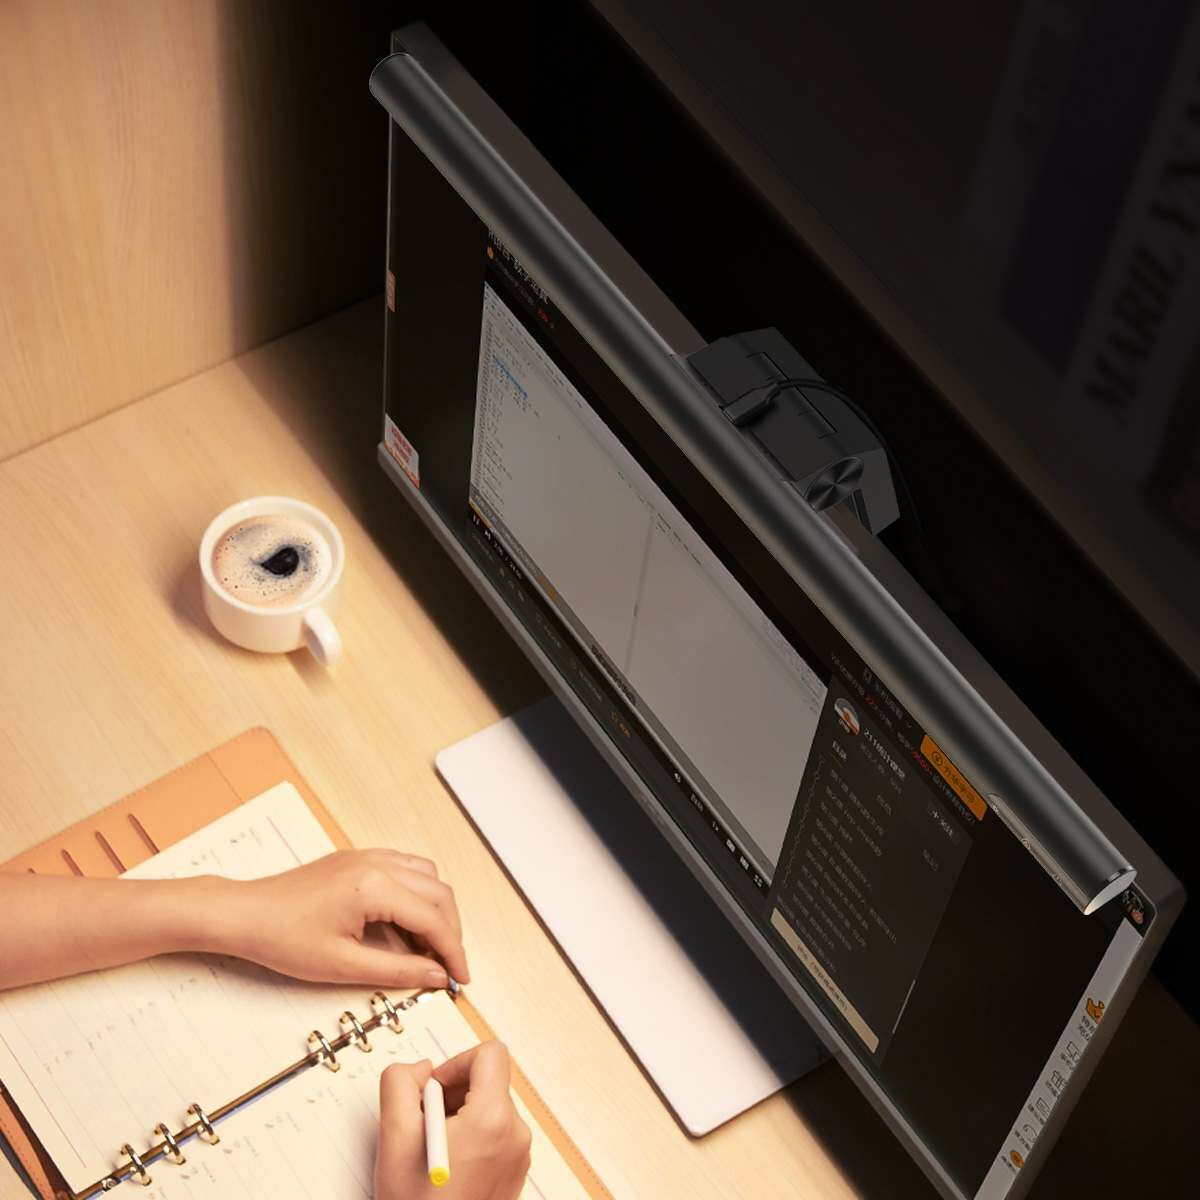 Baseus otthon, i-wok series USB Fokozatmentesen sötétedő monitorra szerelhető függő lámpa 5W (Youth) 2800K/4000K/5500K, fekete (DGIWK-B01)